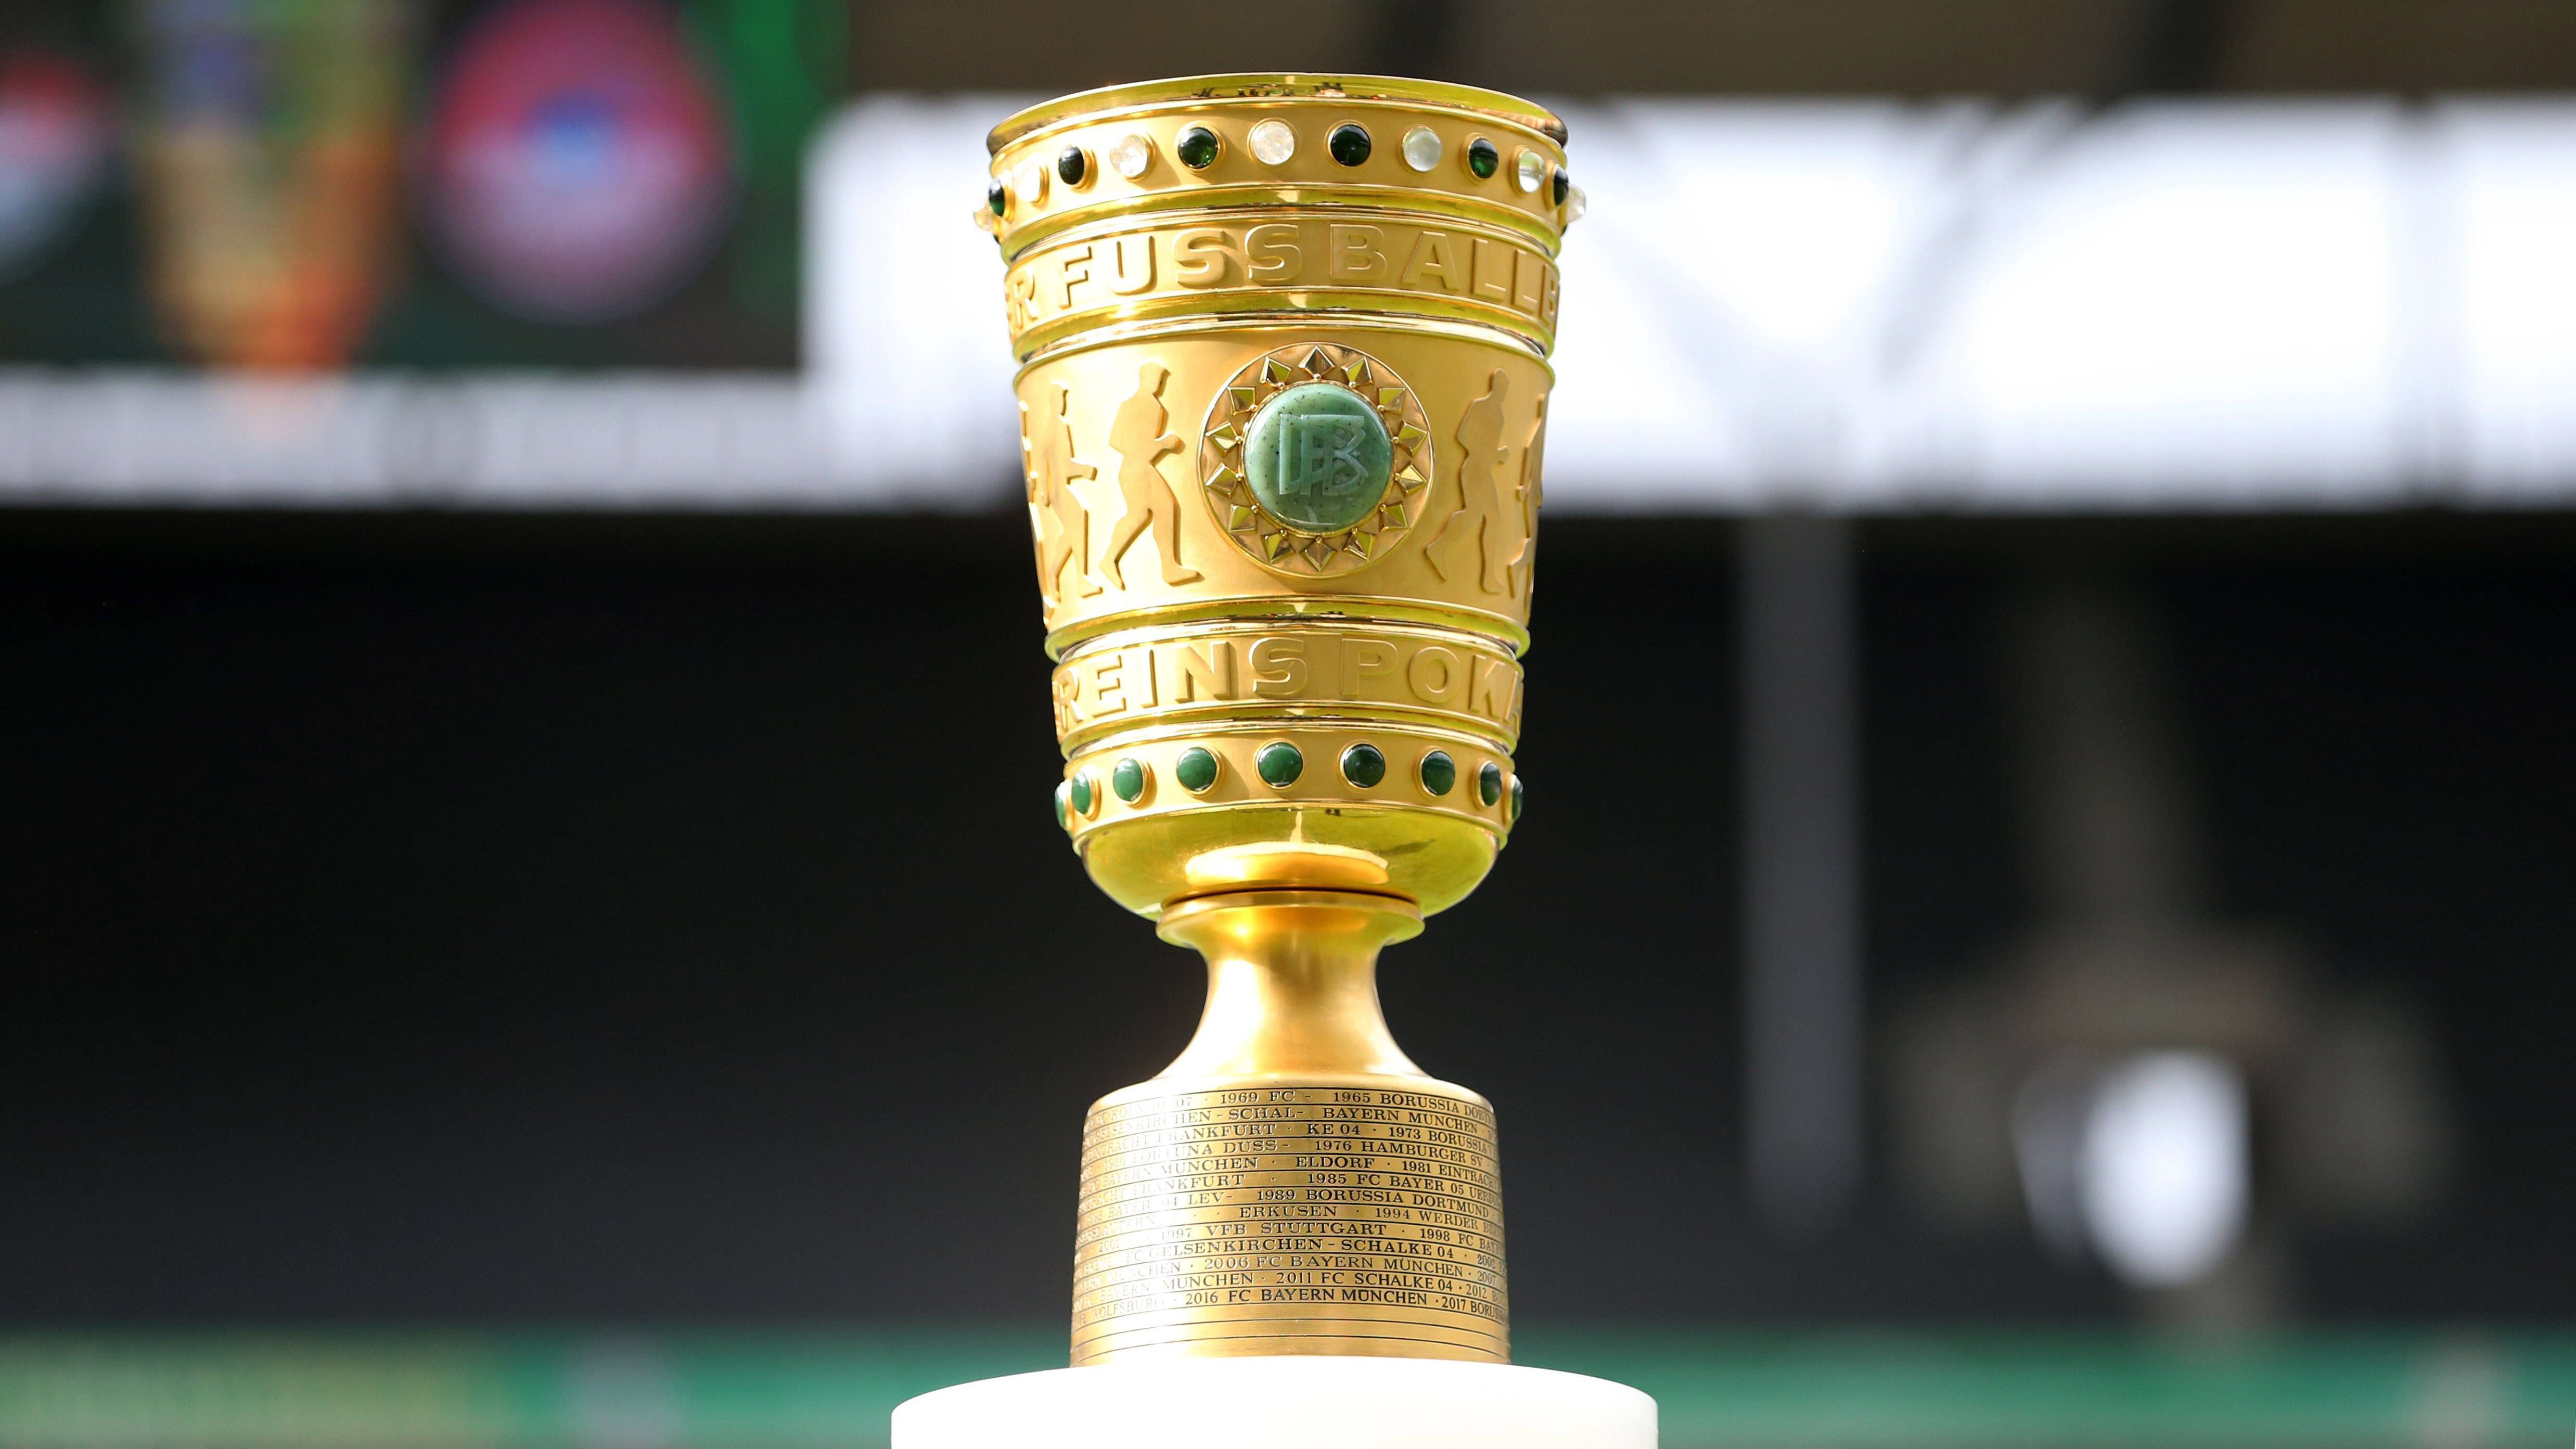 
                <strong>DFB-Pokal: Diese Profi-Klubs könnten in der 1. Runde stolpern</strong><br>
                Die erste Runde des DFB-Pokal steht vor der Tür! Wie jedes Jahr stellt sich die Frage, welcher Favorit gegen eine unterklassige Mannschaft ins Straucheln gerät. ran.de zeigt, welche Profi-Klubs besonders wachsam sein müssen.
              